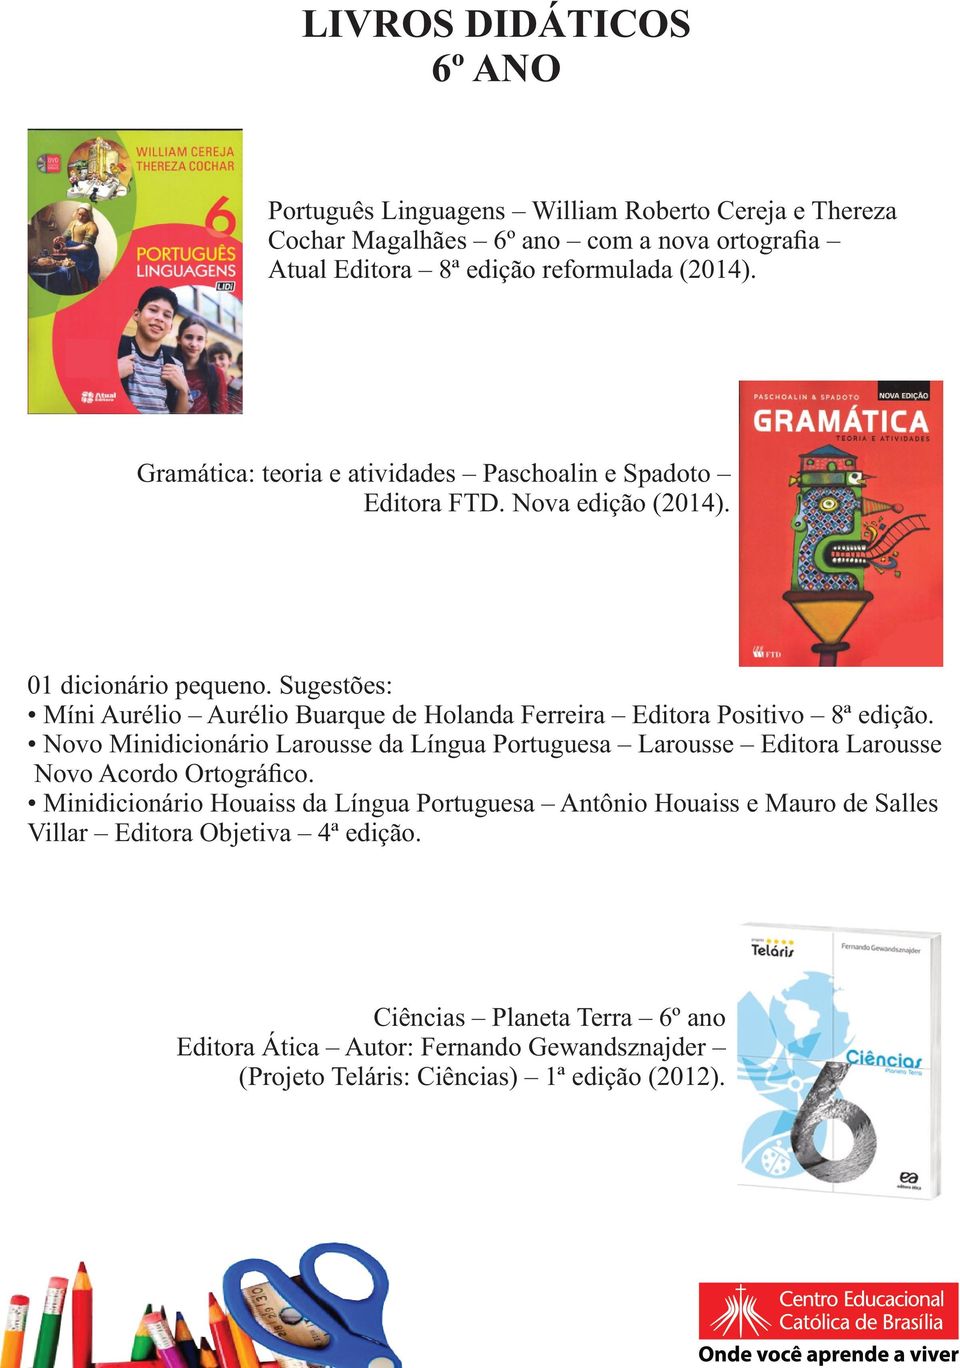 Sugestões: Míni Aurélio Aurélio Buarque de Holanda Ferreira Editora Positivo 8ª edição.